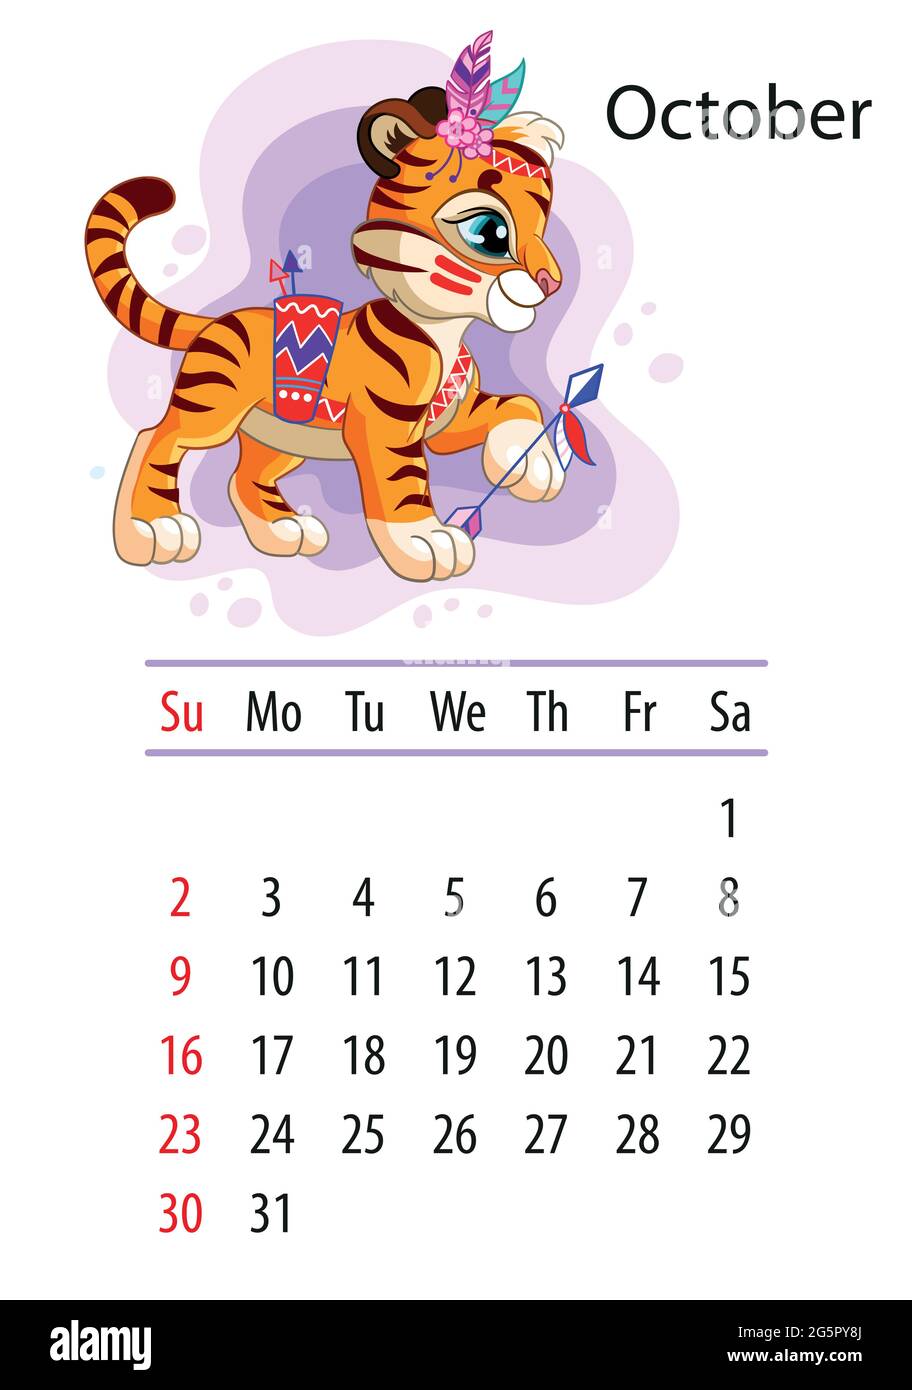 Wandkalender-Design-Vorlage für oktober 2022, Jahr des Tigers nach dem chinesischen oder östlichen Kalender. Tierischer Charakter. Vektorgrafik. Wee Stock Vektor